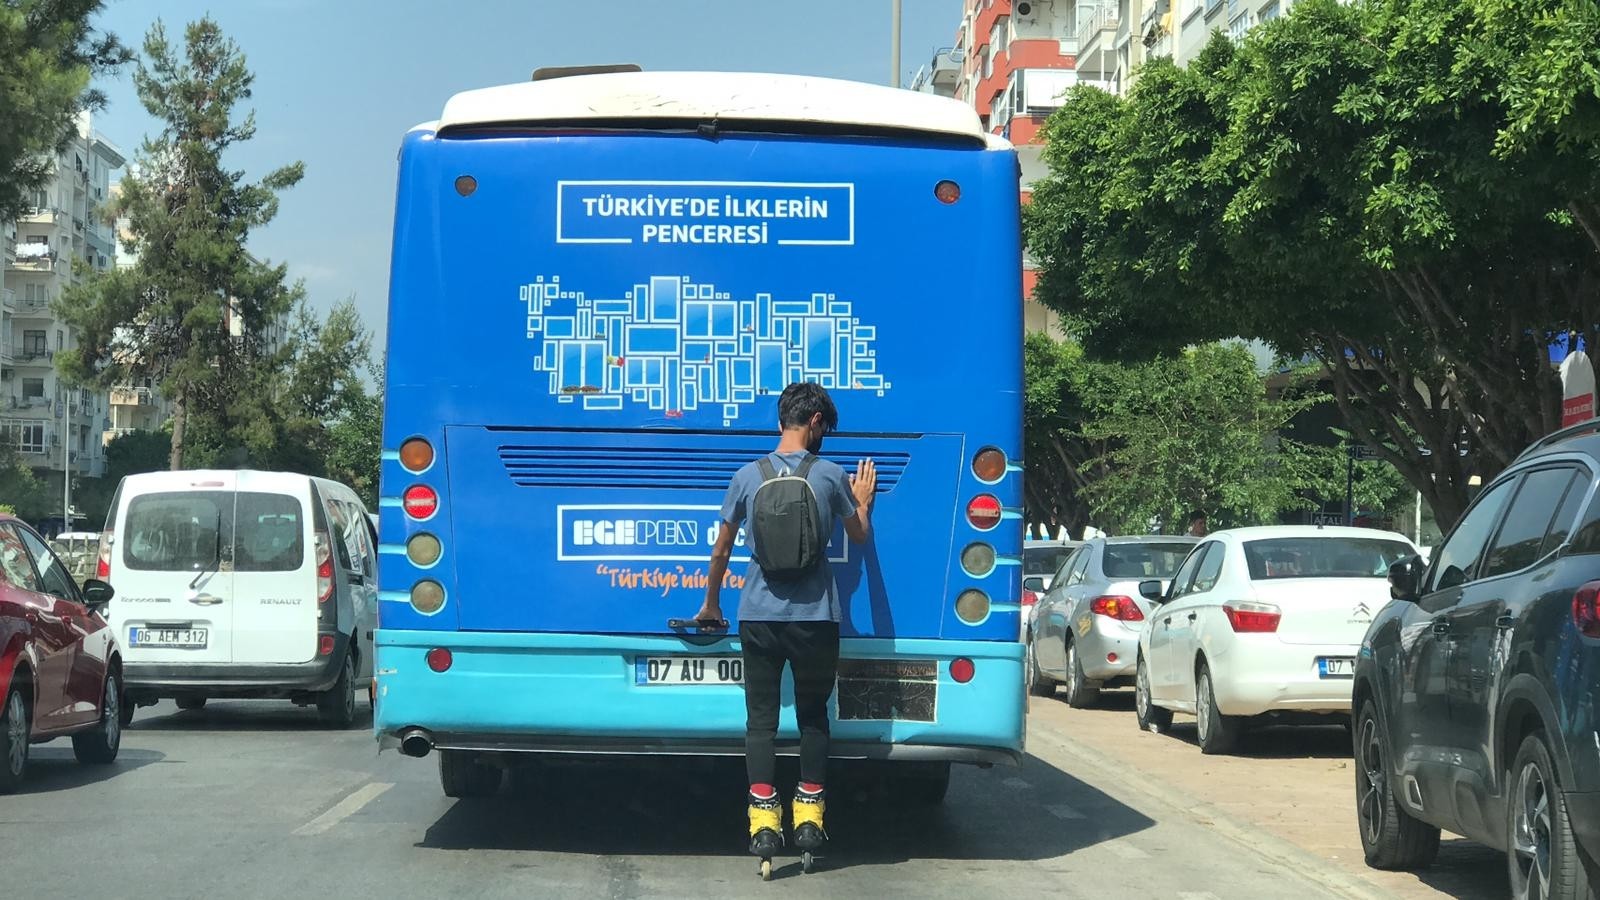 Antalya’da, seyir halindeki özel halk otobüsüne tutunarak ilerleyen patenli gencin tehlikeli yolculuğu